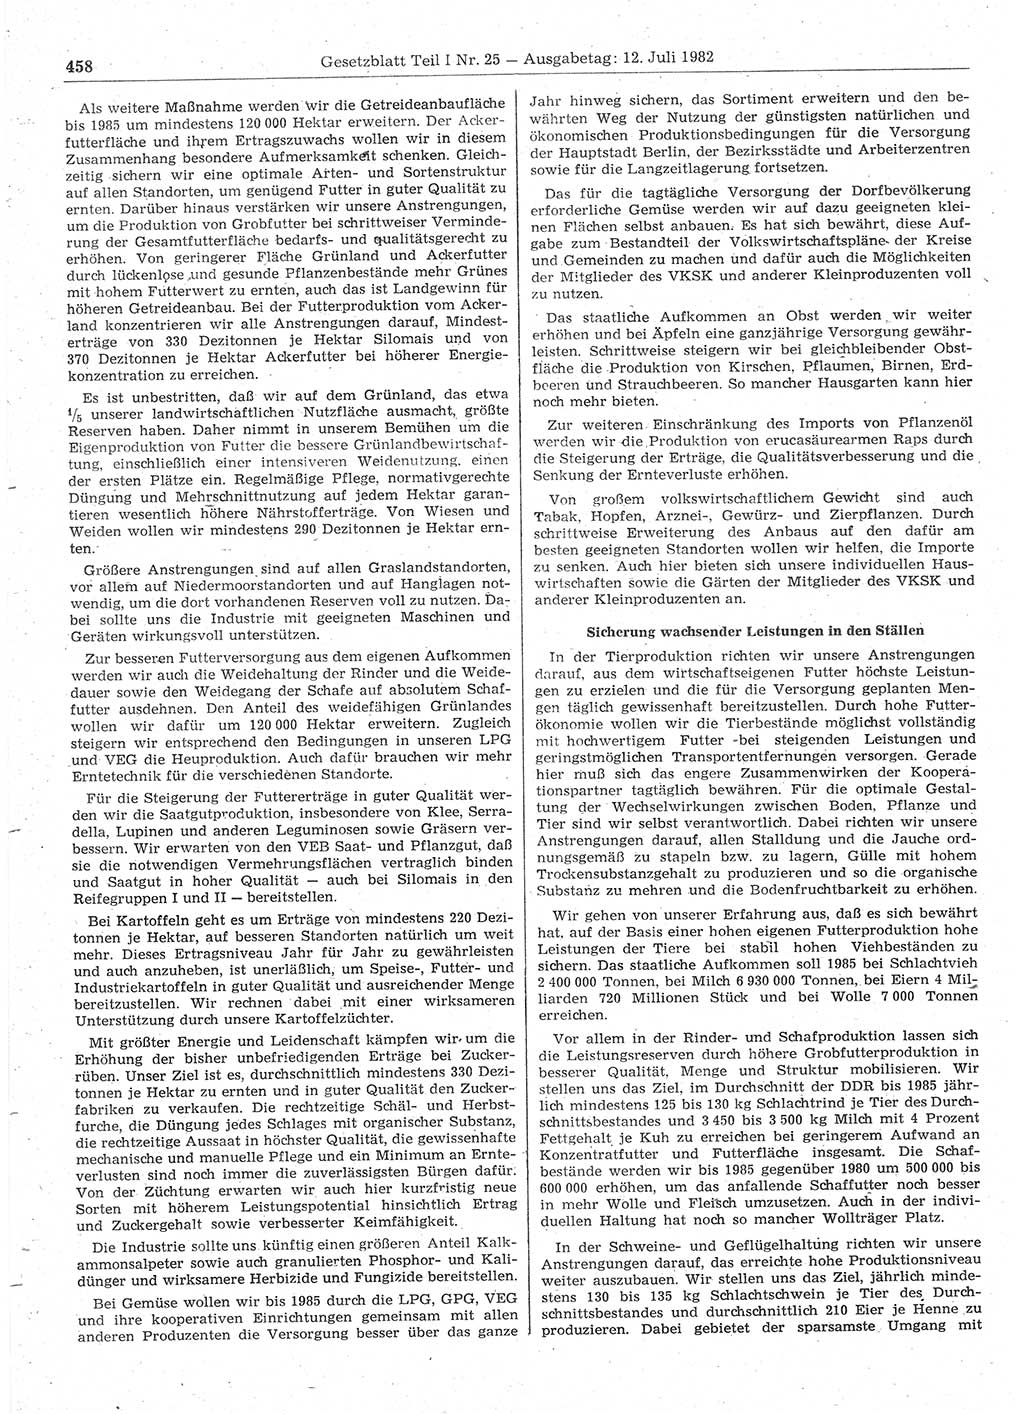 Gesetzblatt (GBl.) der Deutschen Demokratischen Republik (DDR) Teil Ⅰ 1982, Seite 458 (GBl. DDR Ⅰ 1982, S. 458)